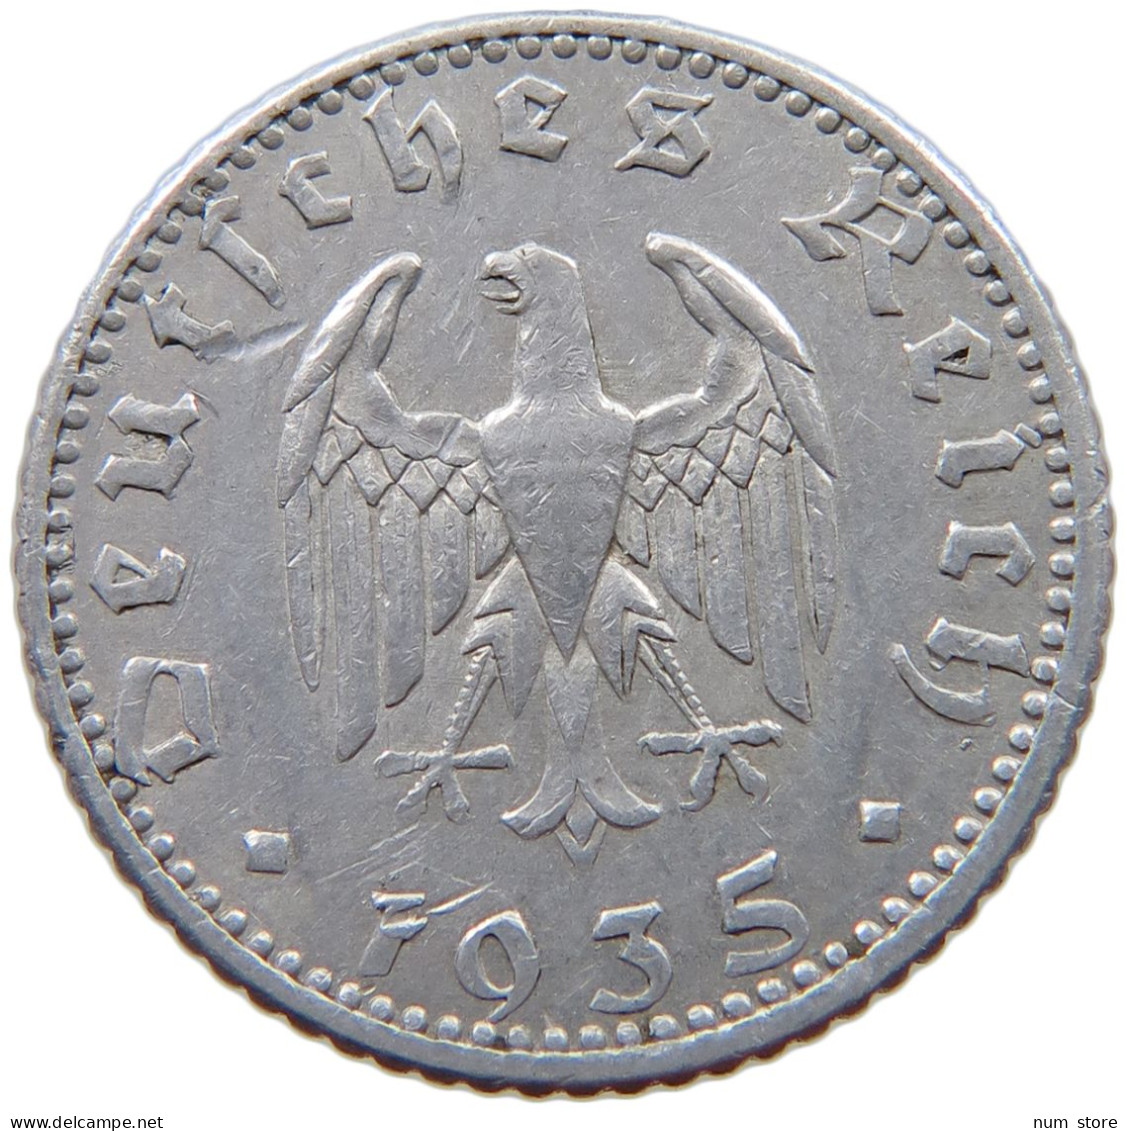 GERMANY 50 PFENNIG 1935 A #a053 0463 - 50 Reichspfennig